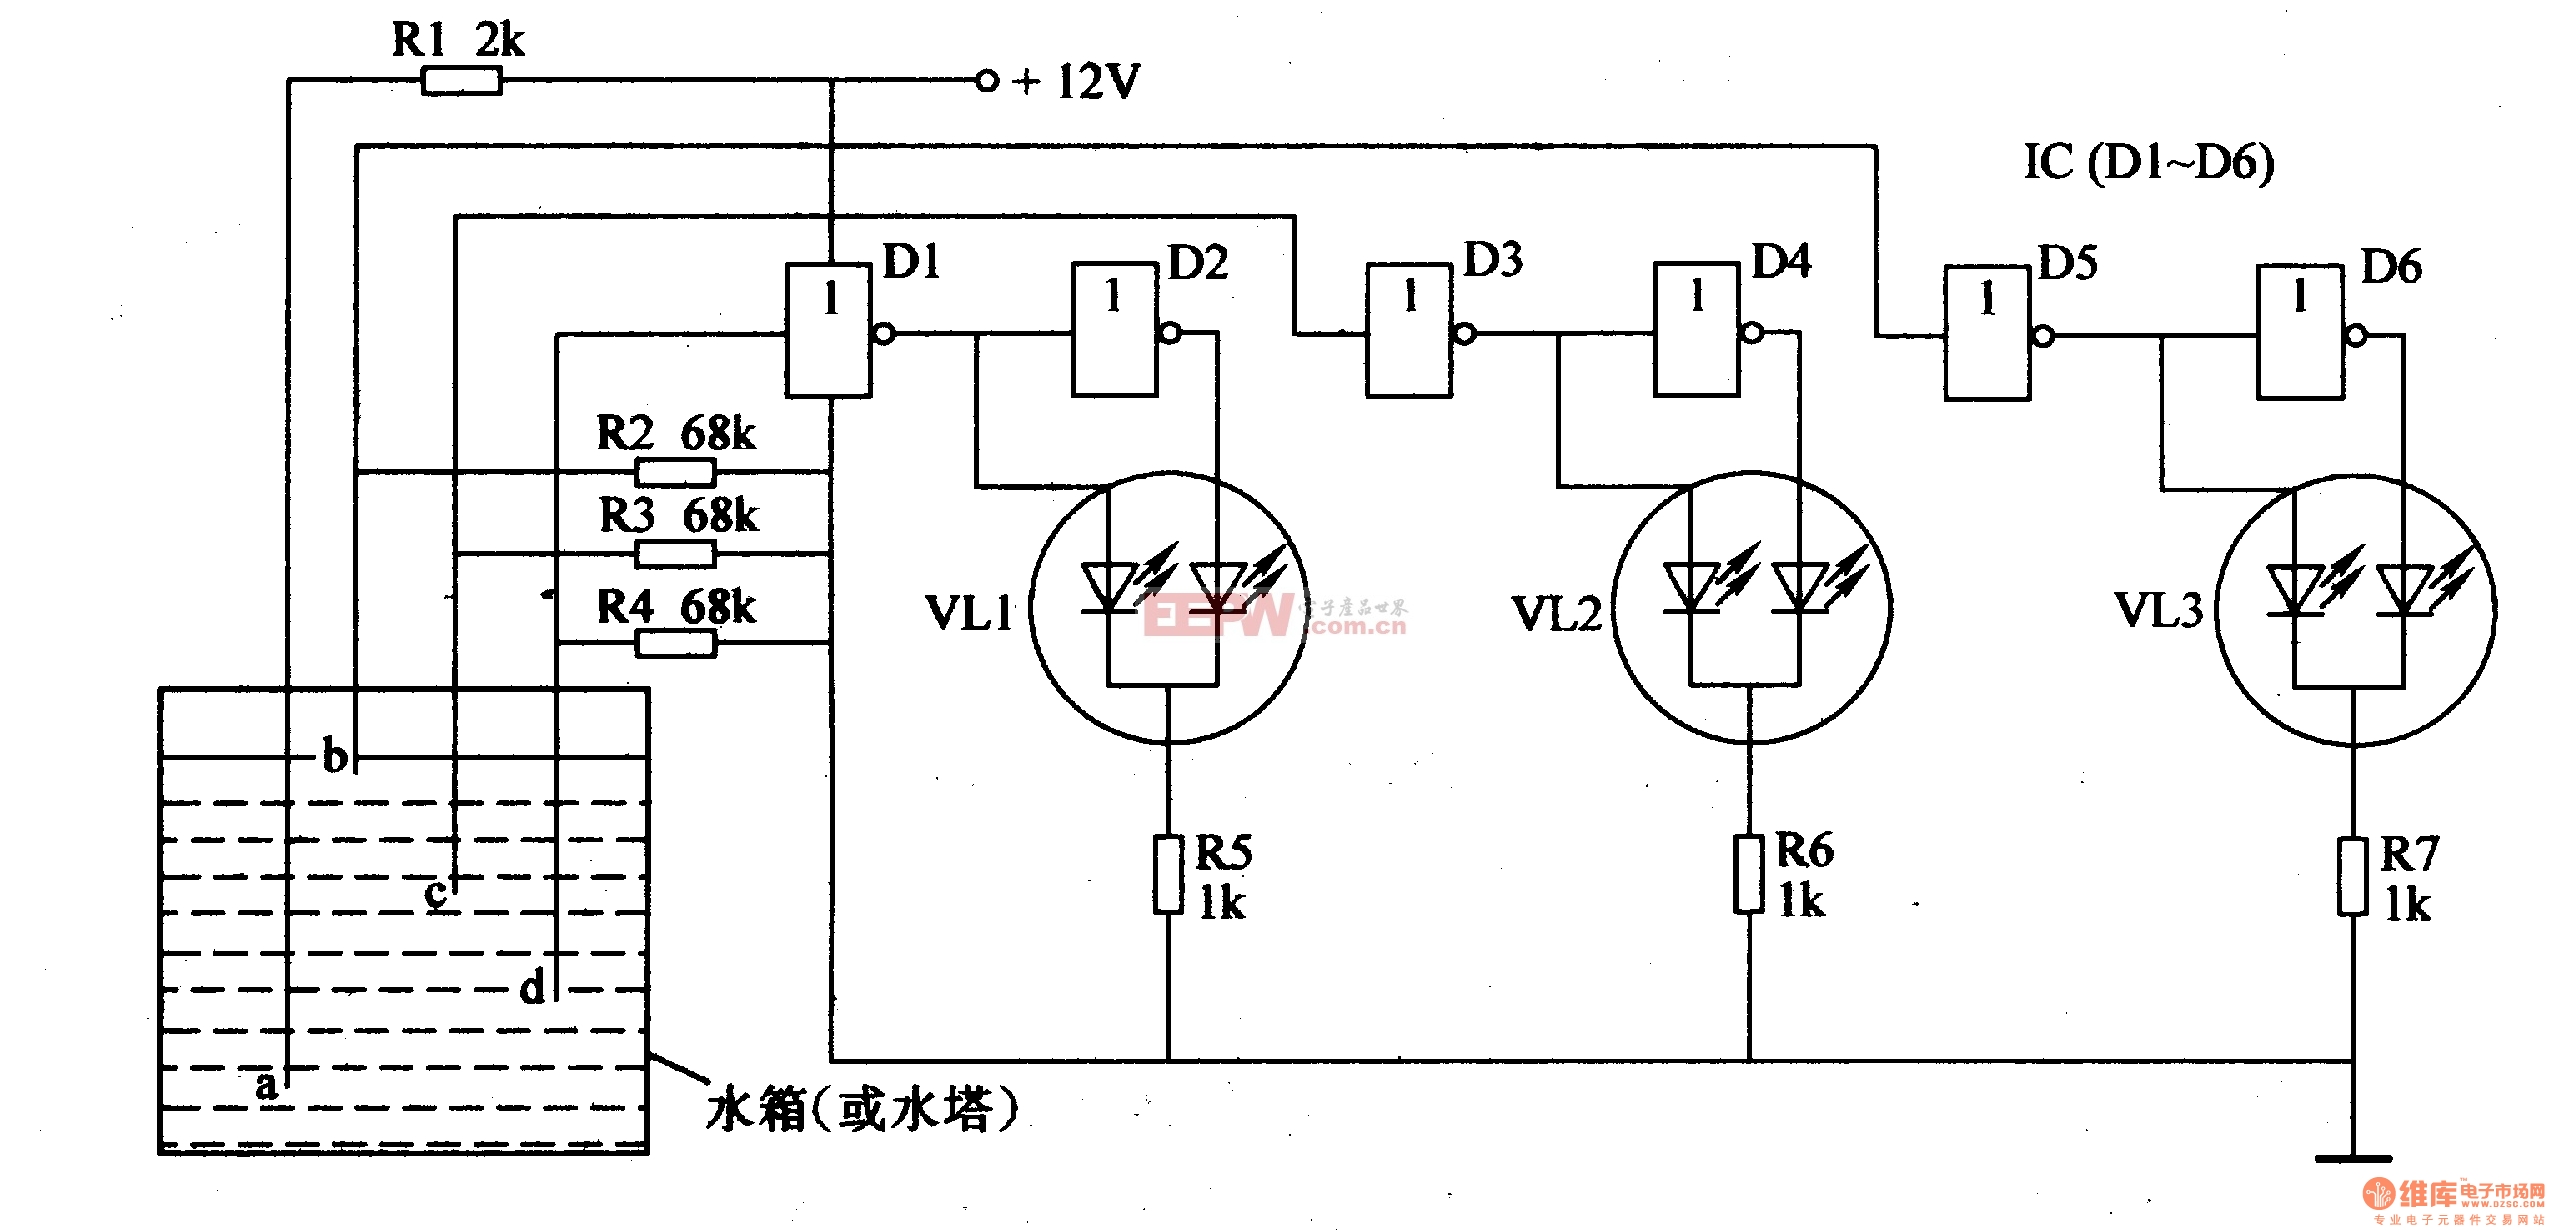 电路工作原理本例介绍一款采用cd4069数字集成电路制作的led水位指示